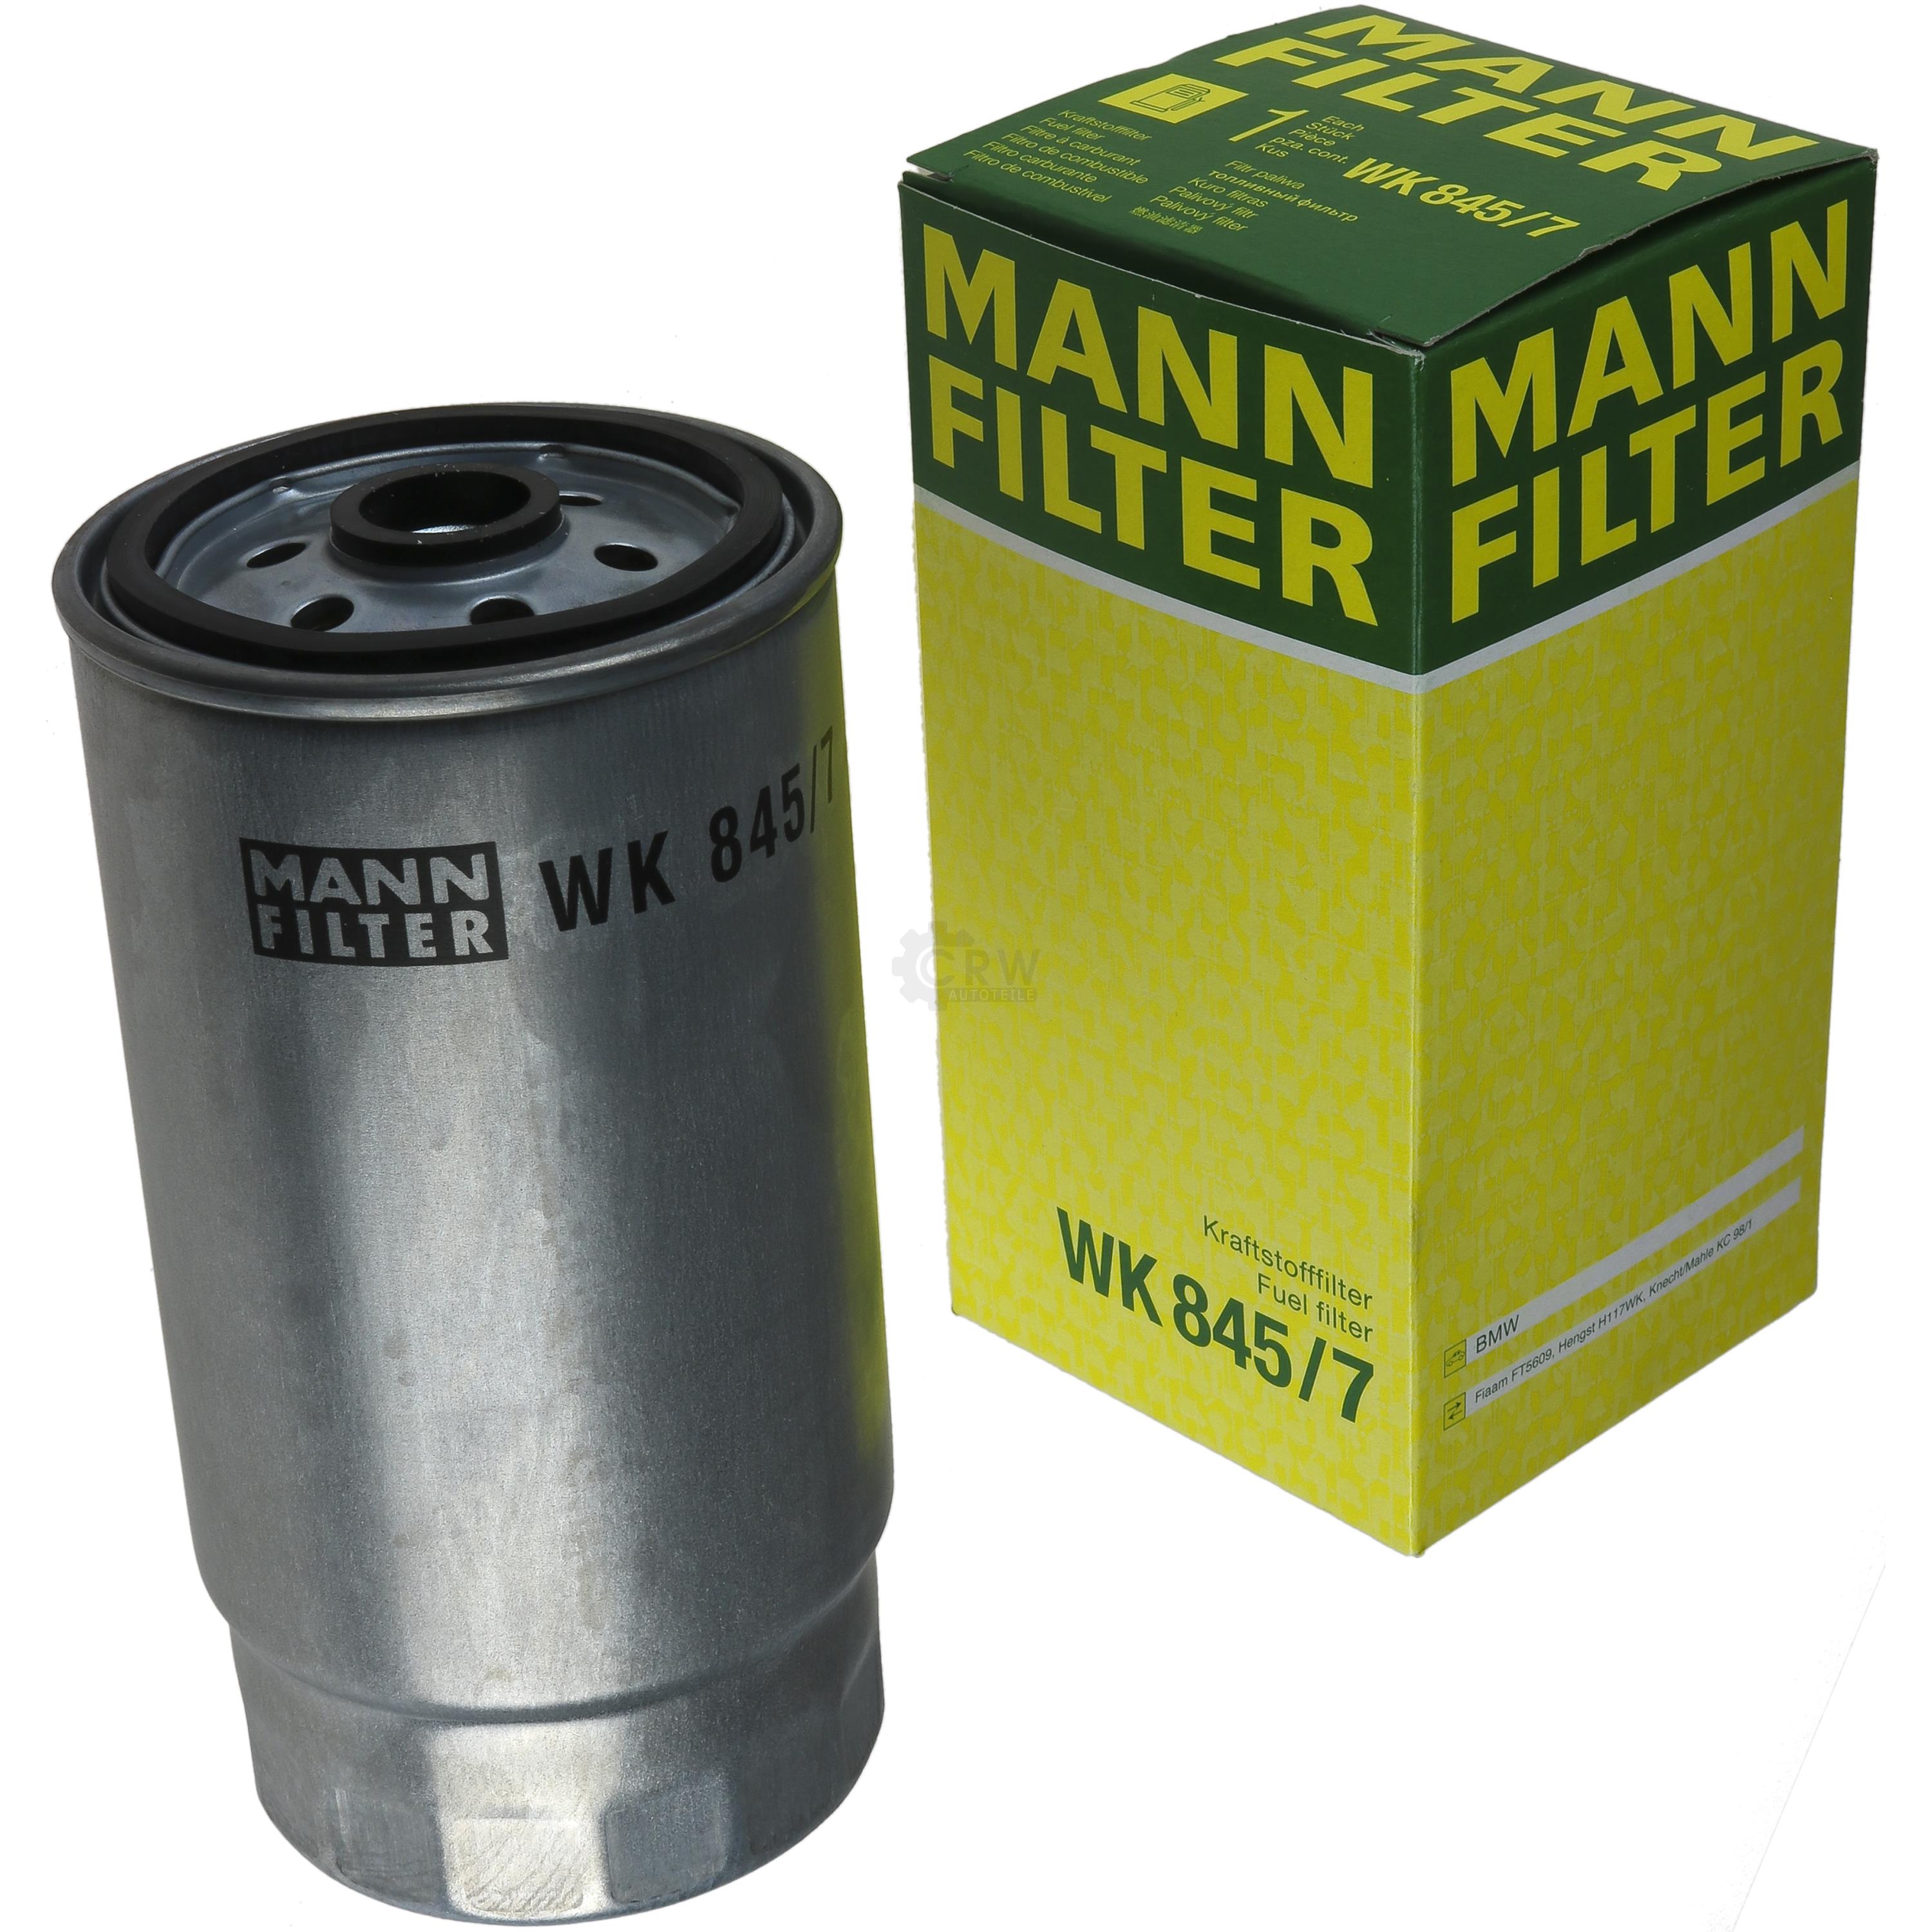 MANN-FILTER Kraftstofffilter WK 845/7 Fuel Filter